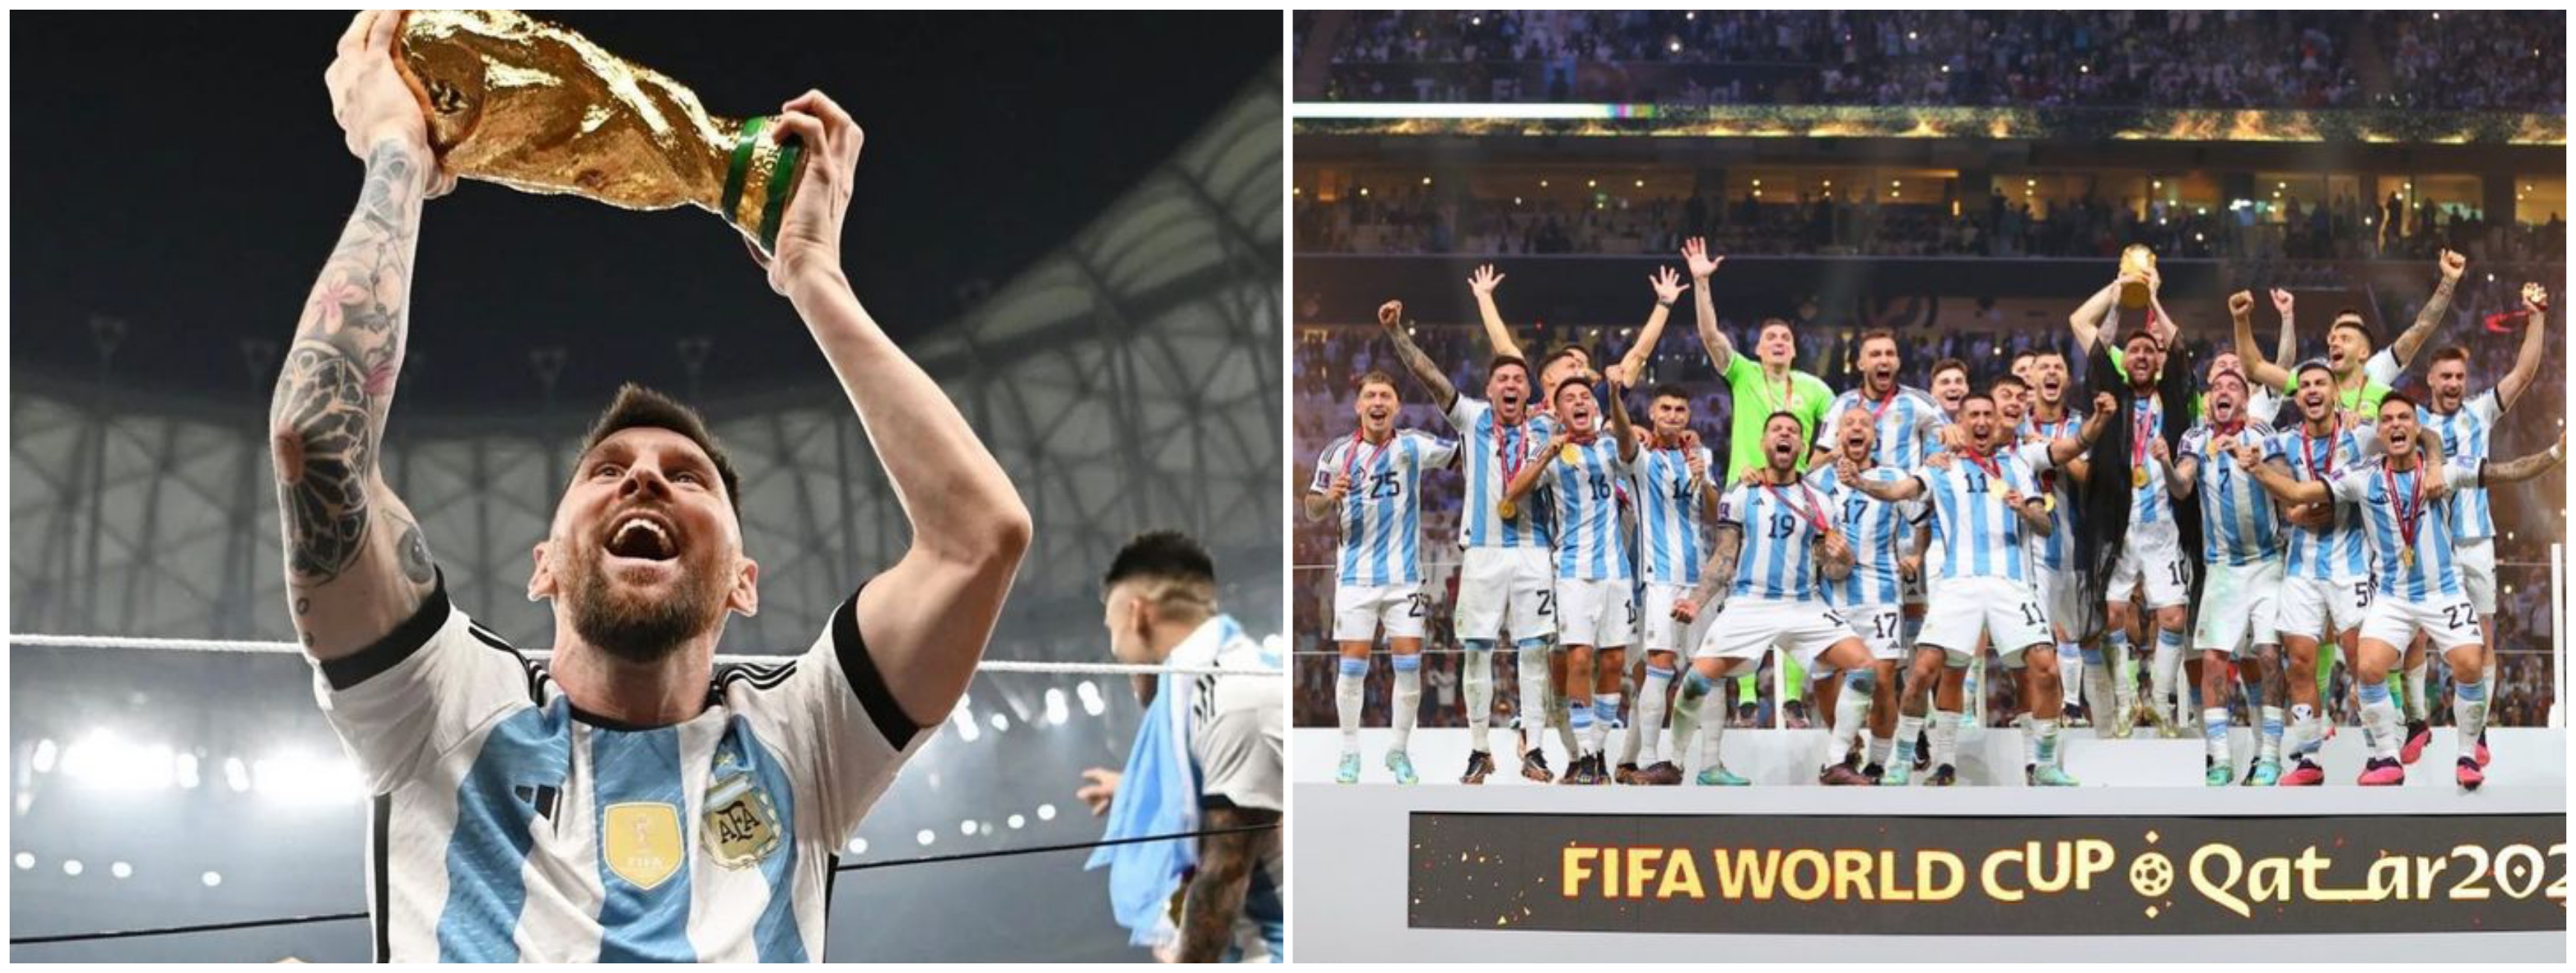 Jadi sorotan saat angkat trofi Piala Dunia 2022, ini makna dibalik jubah yang dipakai Messi